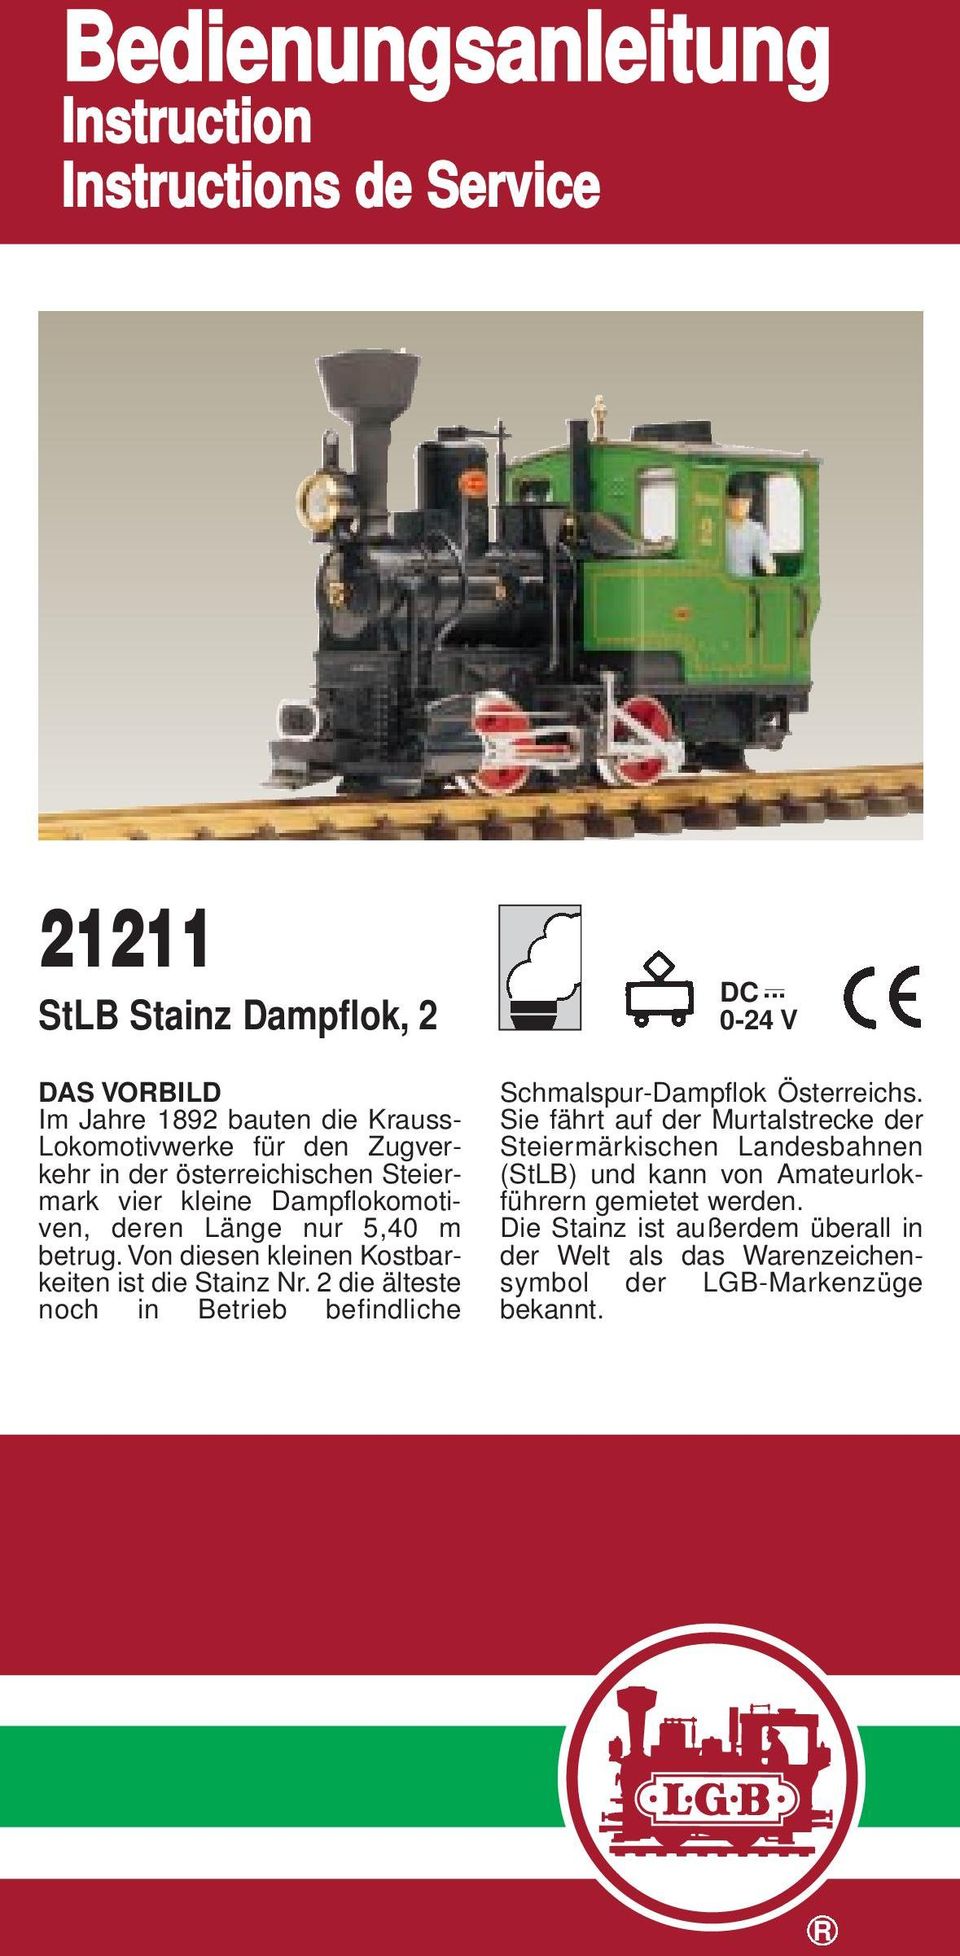 Von diesen kleinen Kostbarkeiten ist die Stainz Nr. 2 die älteste noch in Betrieb befindliche DC... 0-24 V Schmalspur-Dampflok Österreichs.